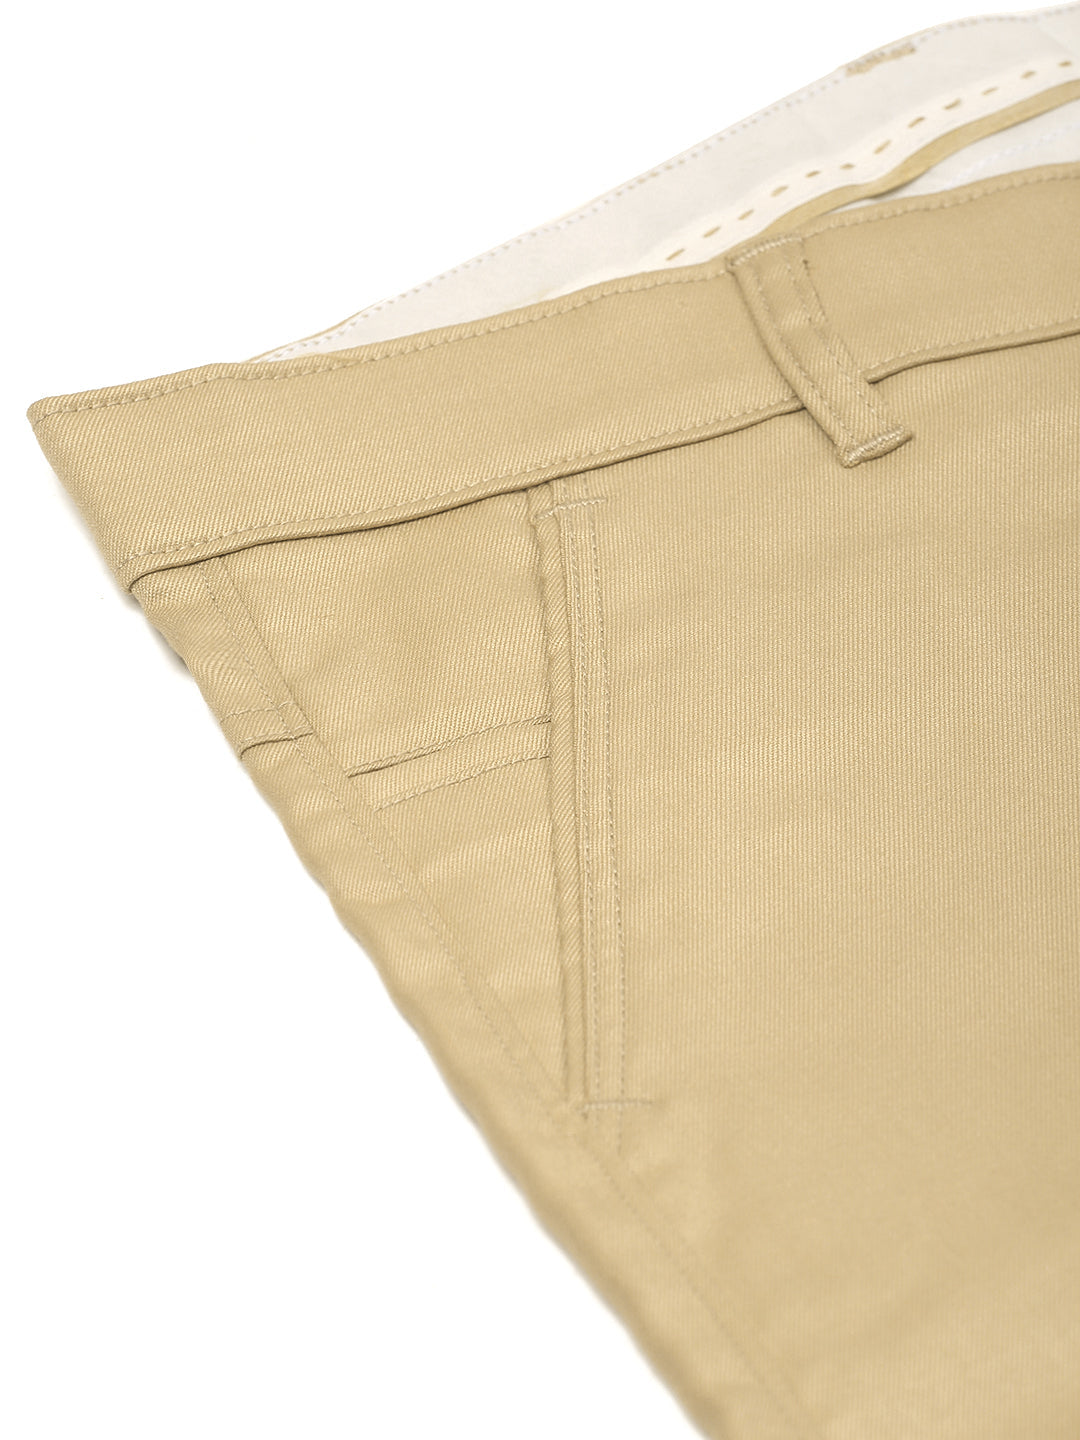 Men's Casual Cotton Solid Shorts ( SGP 153 Beige ) - Jainish